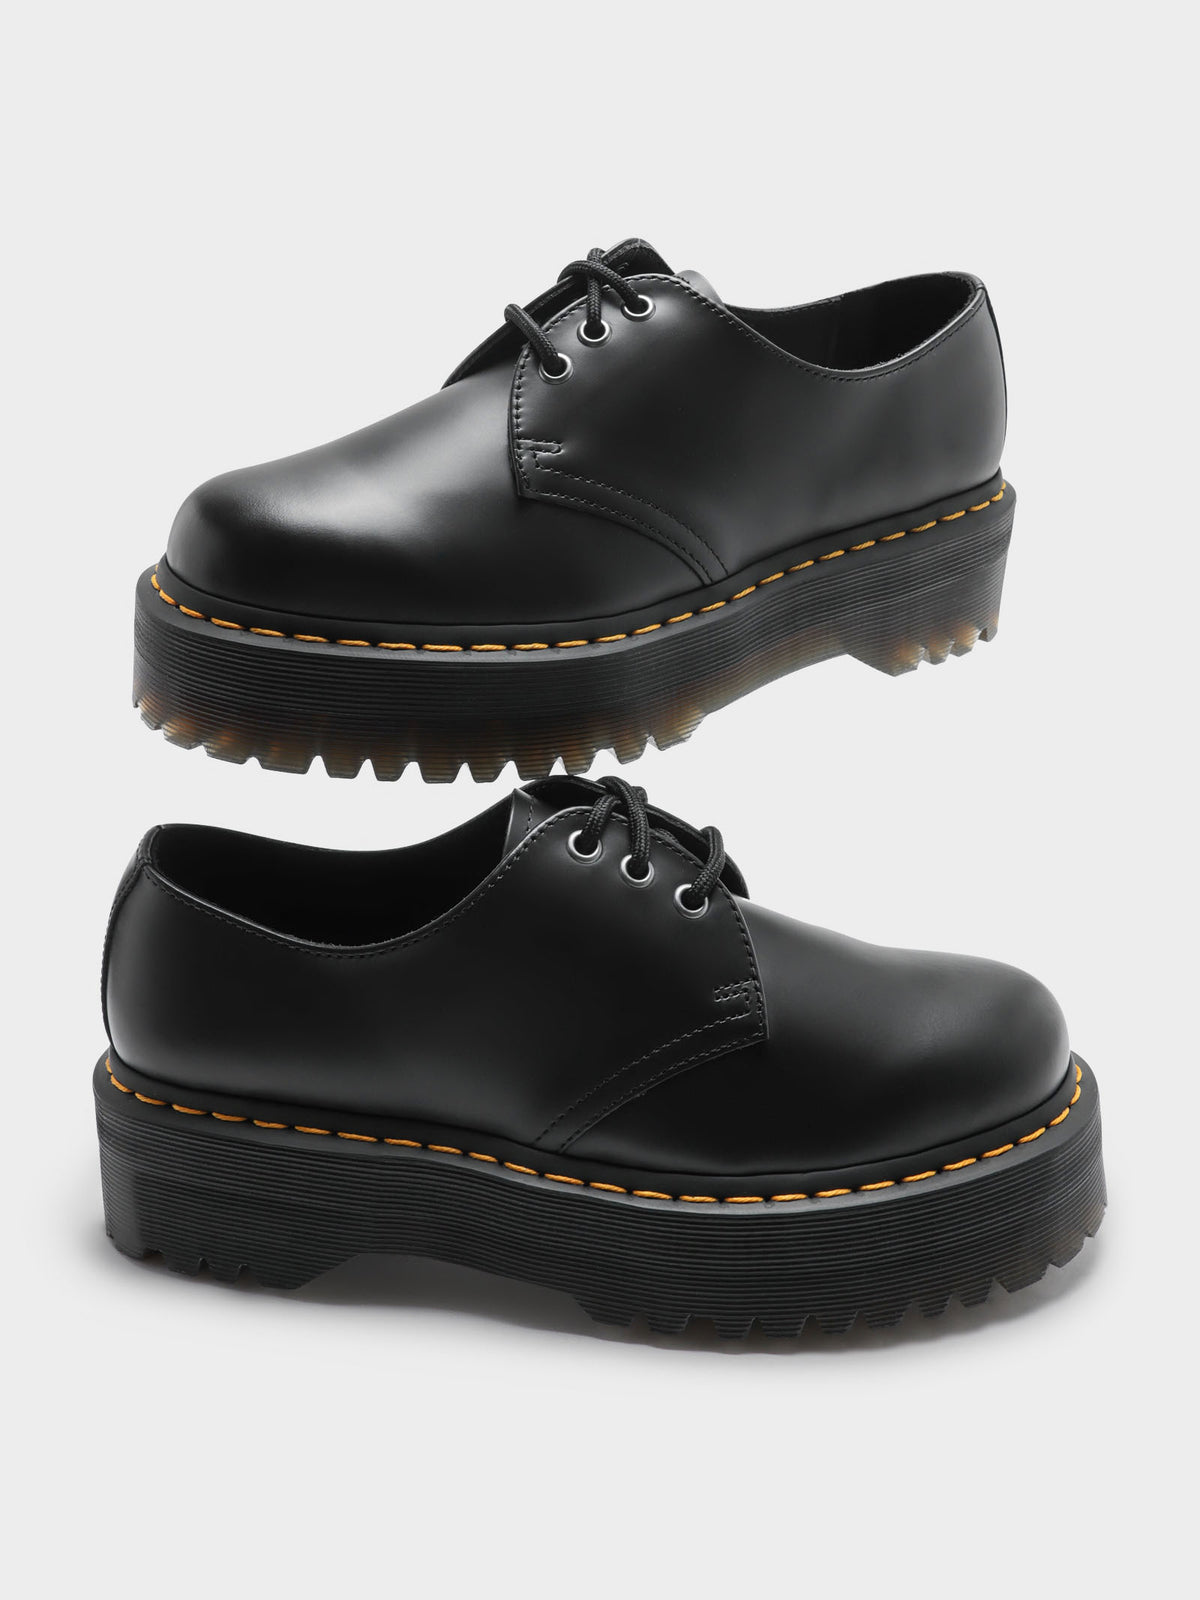 Unisex 1461 Quad Polished Platform Shoes in Black